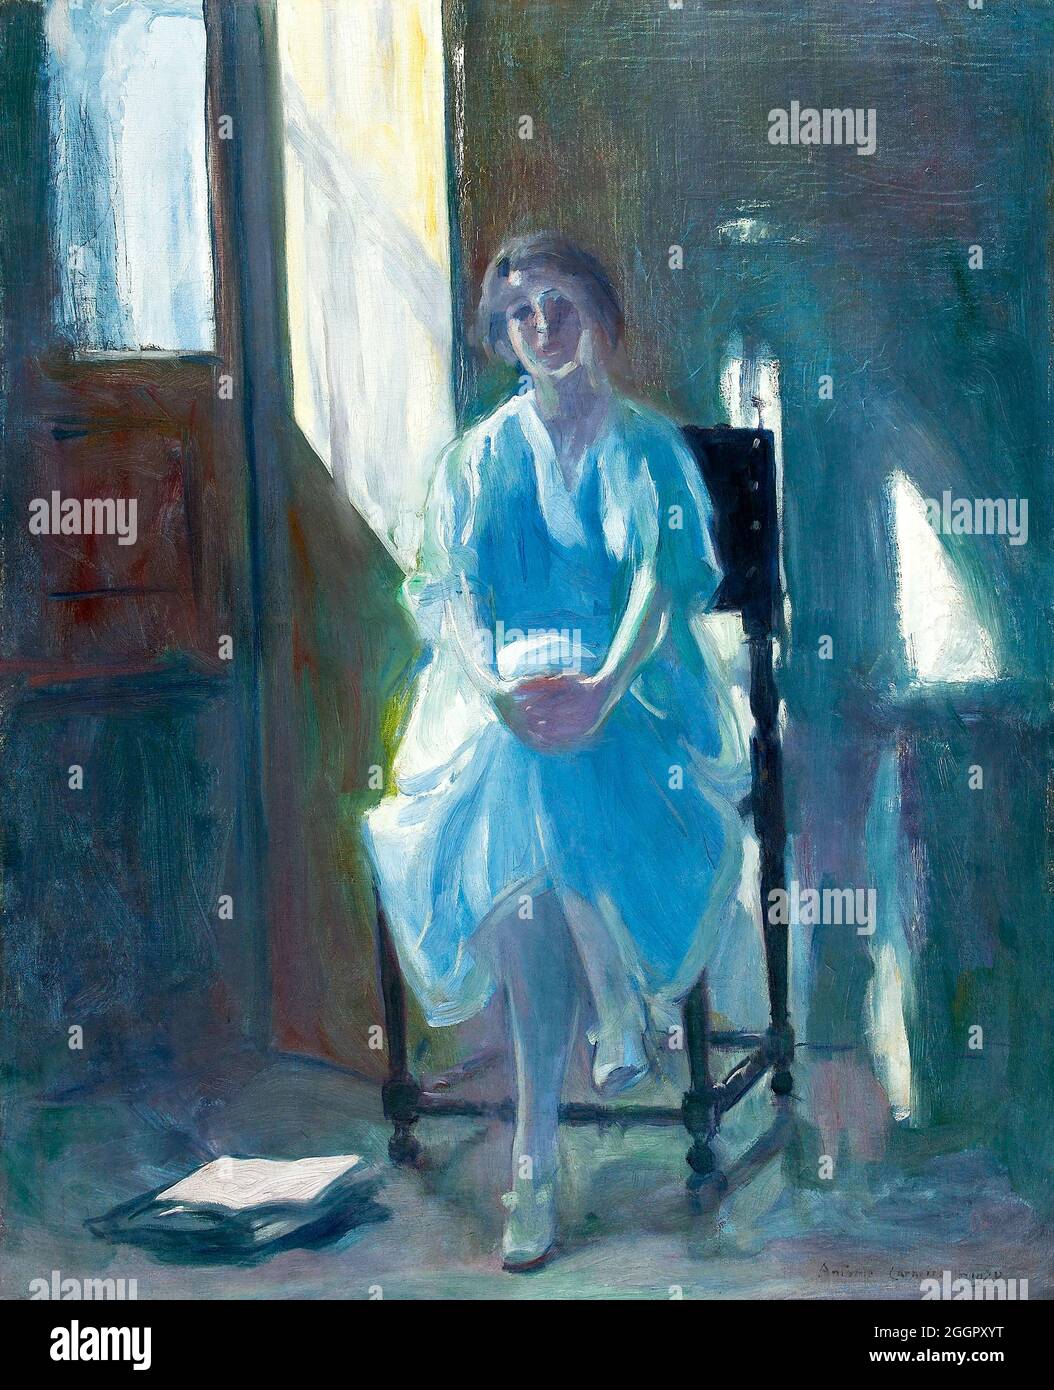 Sinfonia Azul par le peintre expressionniste portugais Antonio Carneiro (1872-1930), huile sur toile, 1920 Banque D'Images